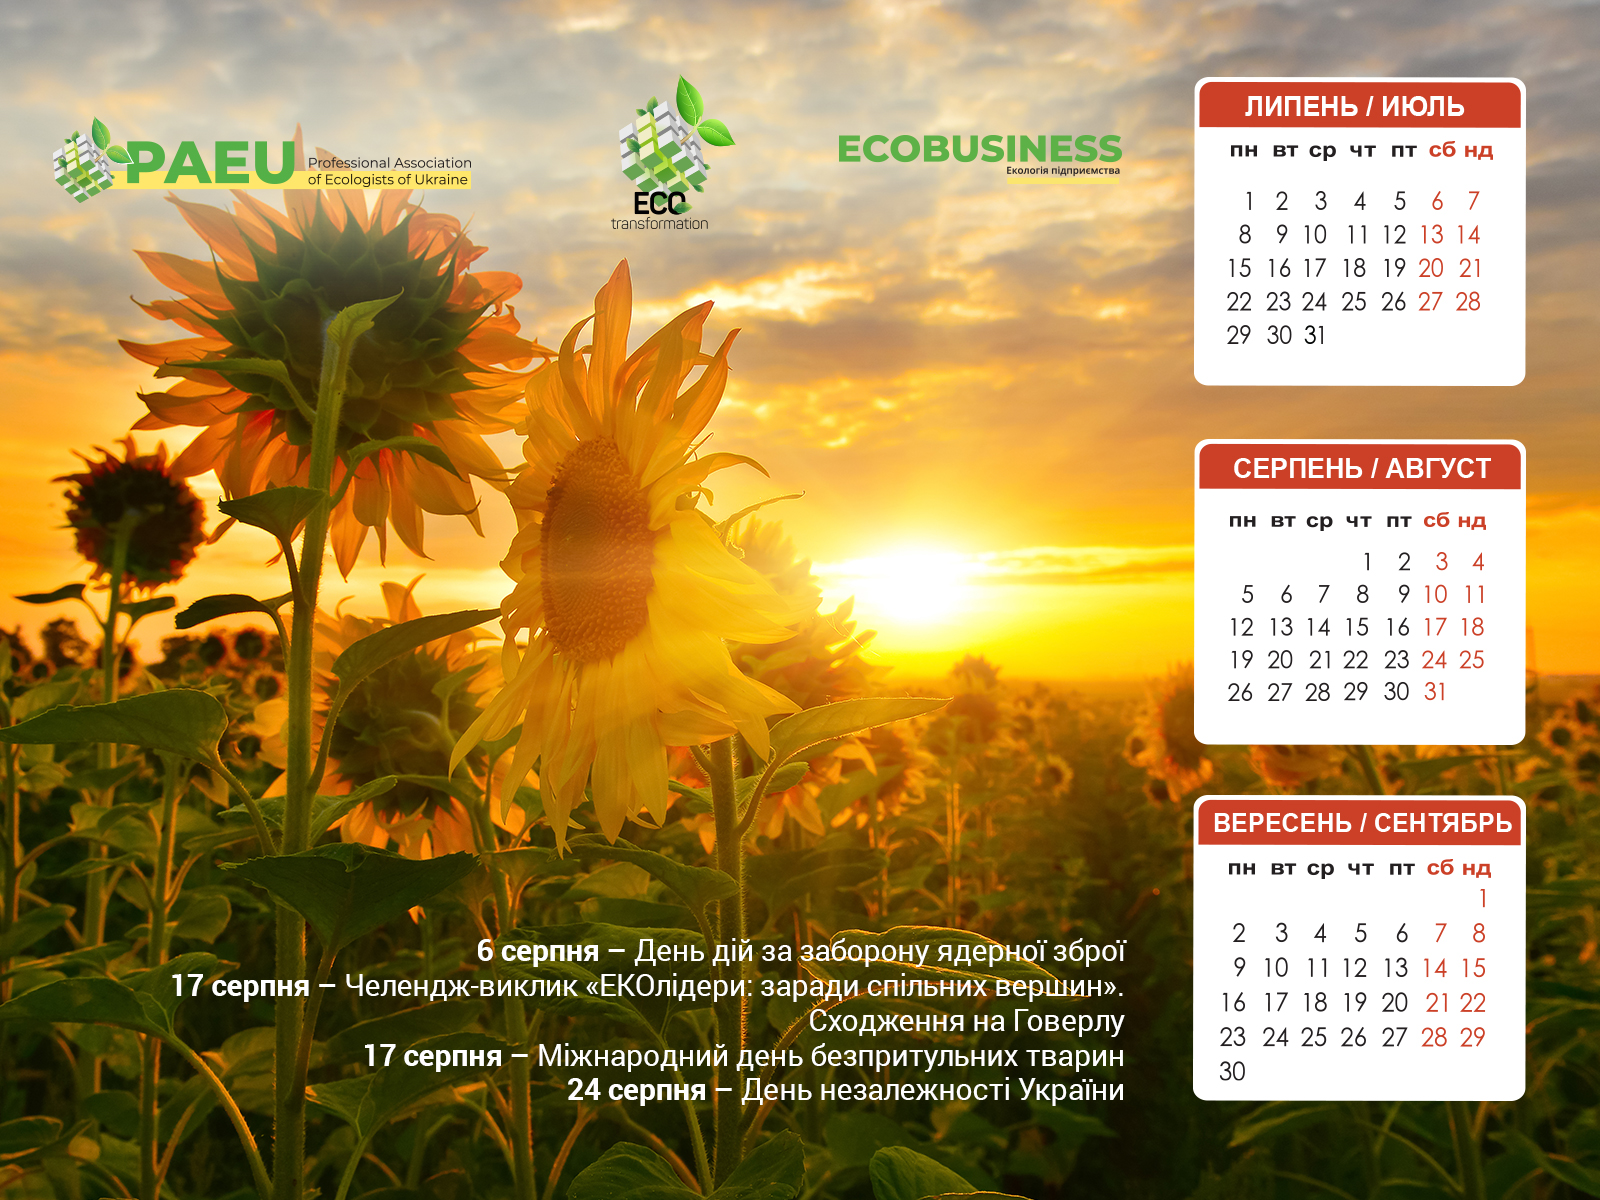 Серпневий календар-заставка на робочий стіл - Журнал ECOBUSINESS